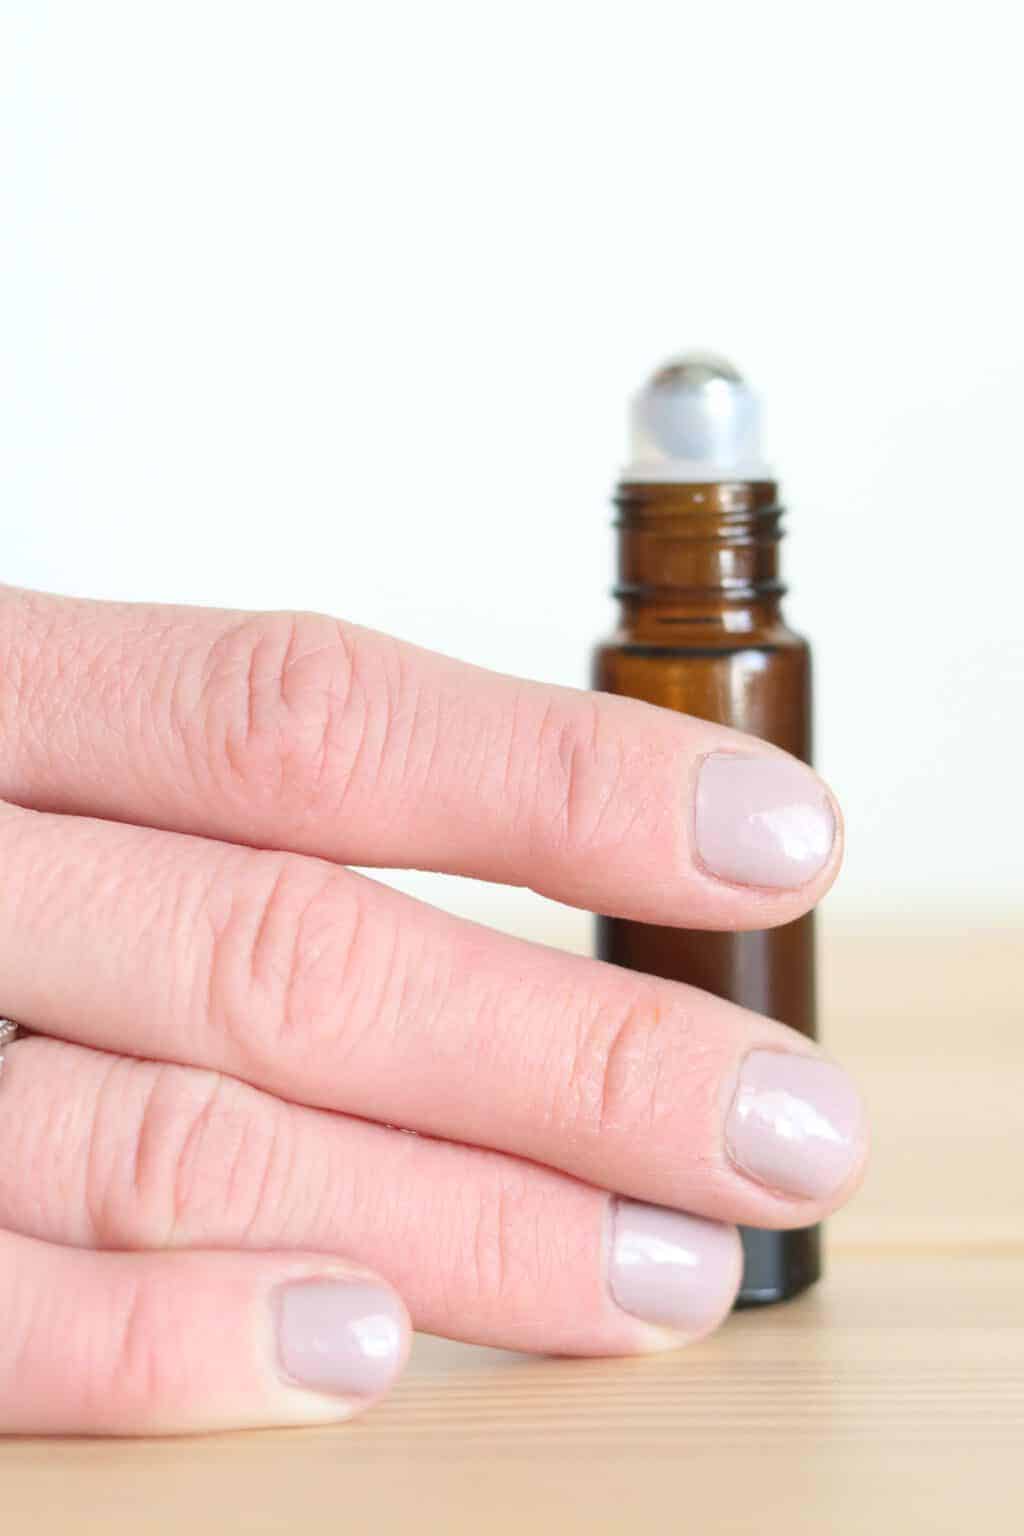 Women's hand and fingernails on roller bottle.